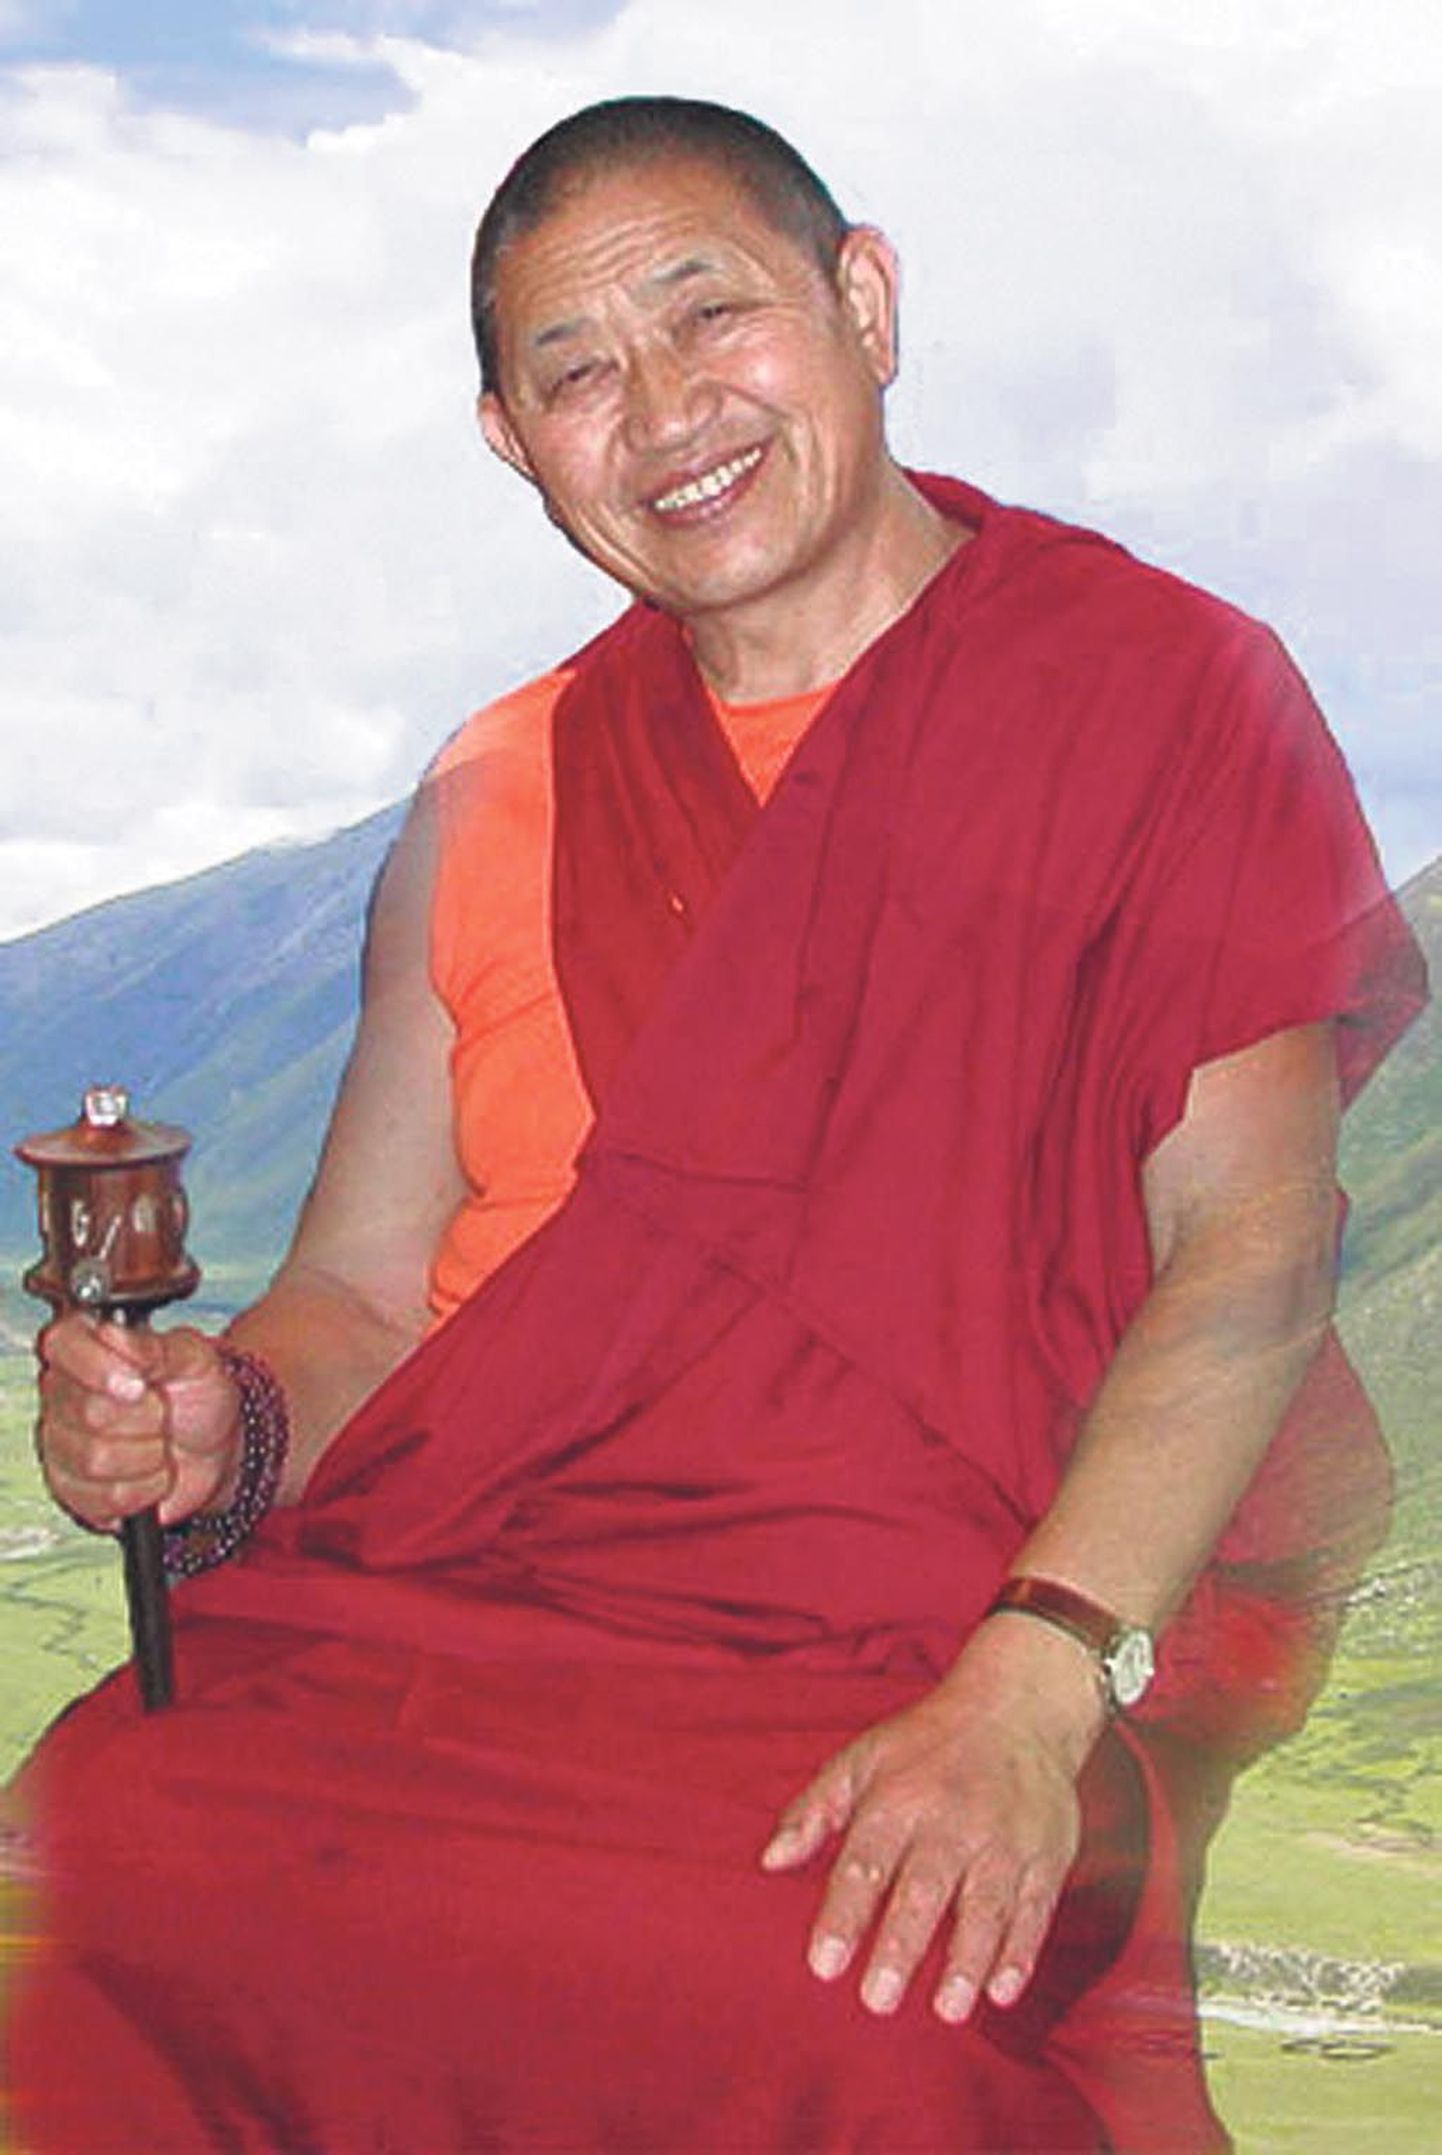 Heatahtlik ja rõõmsameelne laama Garchen Rinpoche on aidanud inimesi erinevatest sõltuvustest vabanemisel.